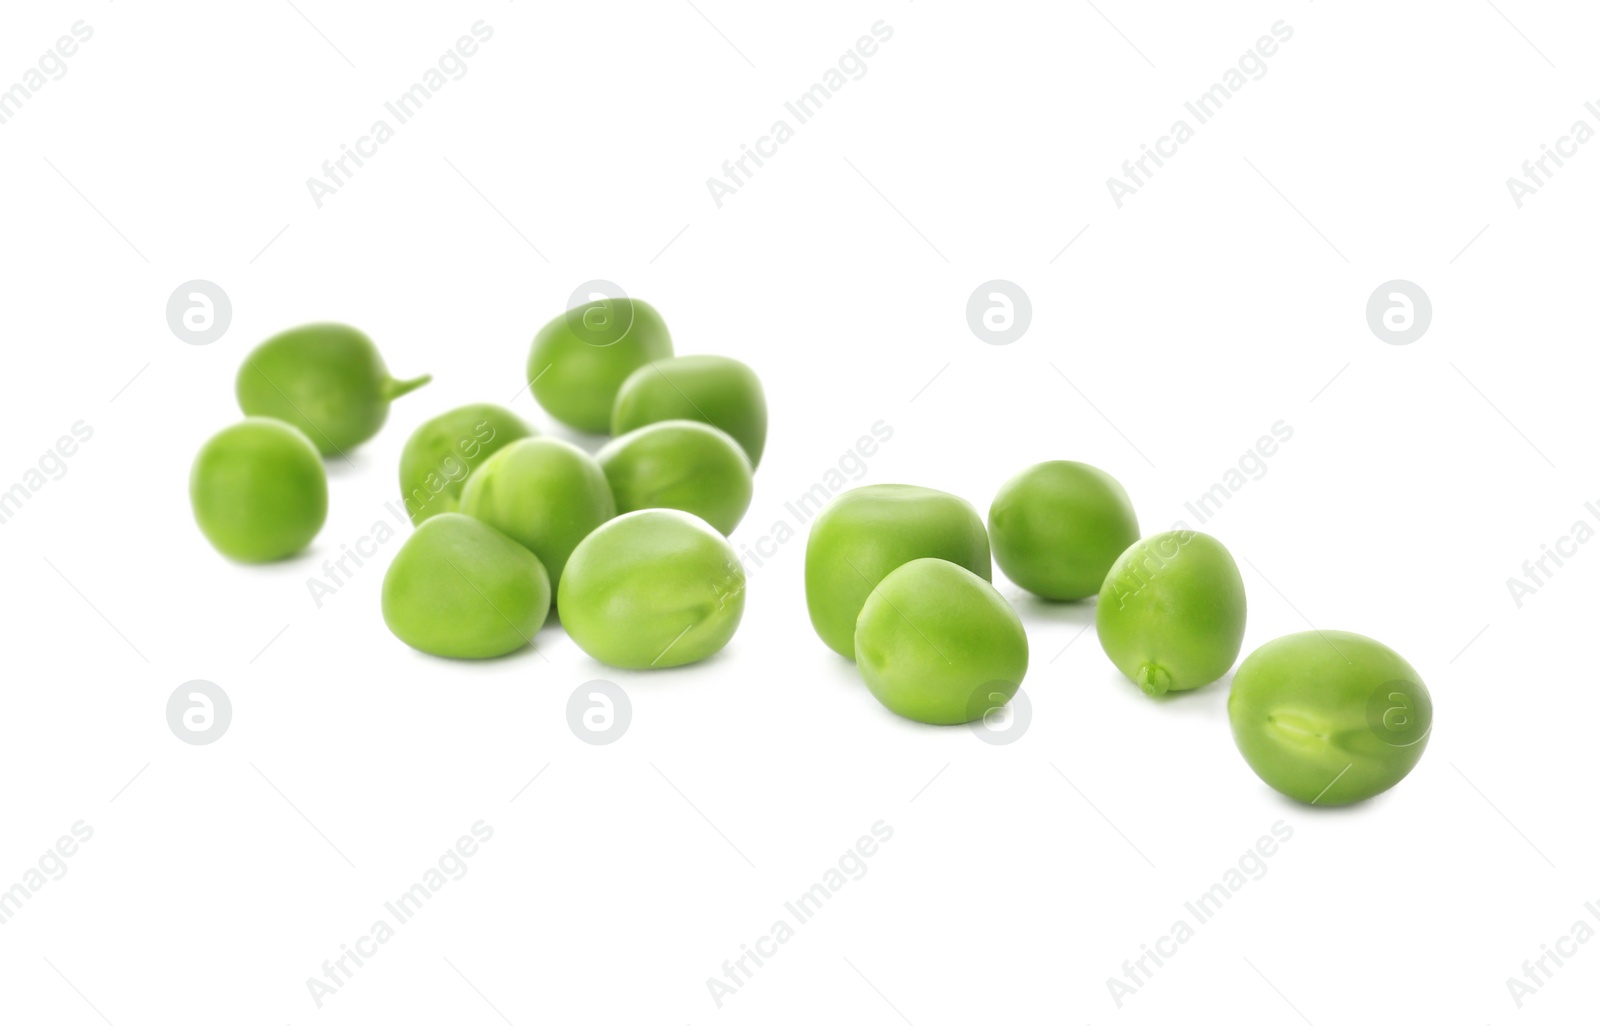 Photo of Fresh raw green peas on white background